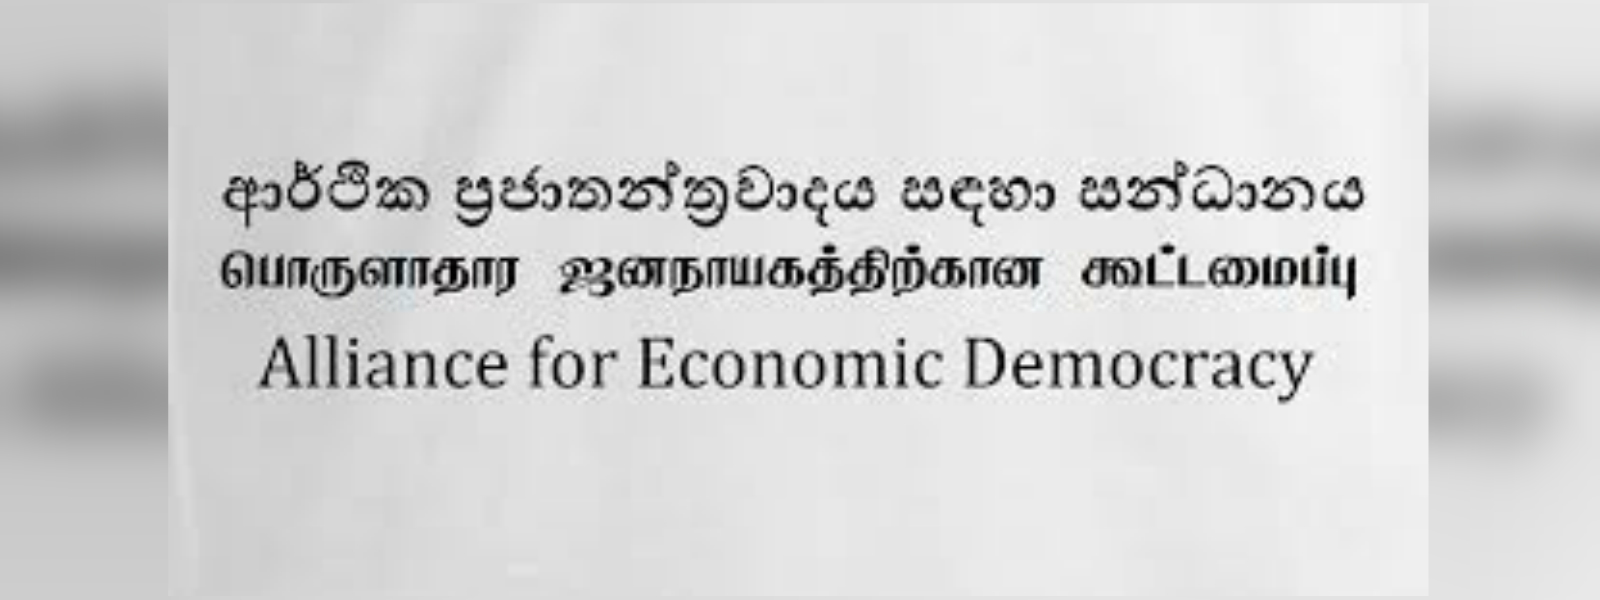 Alliance for Economic Democracy on MCC